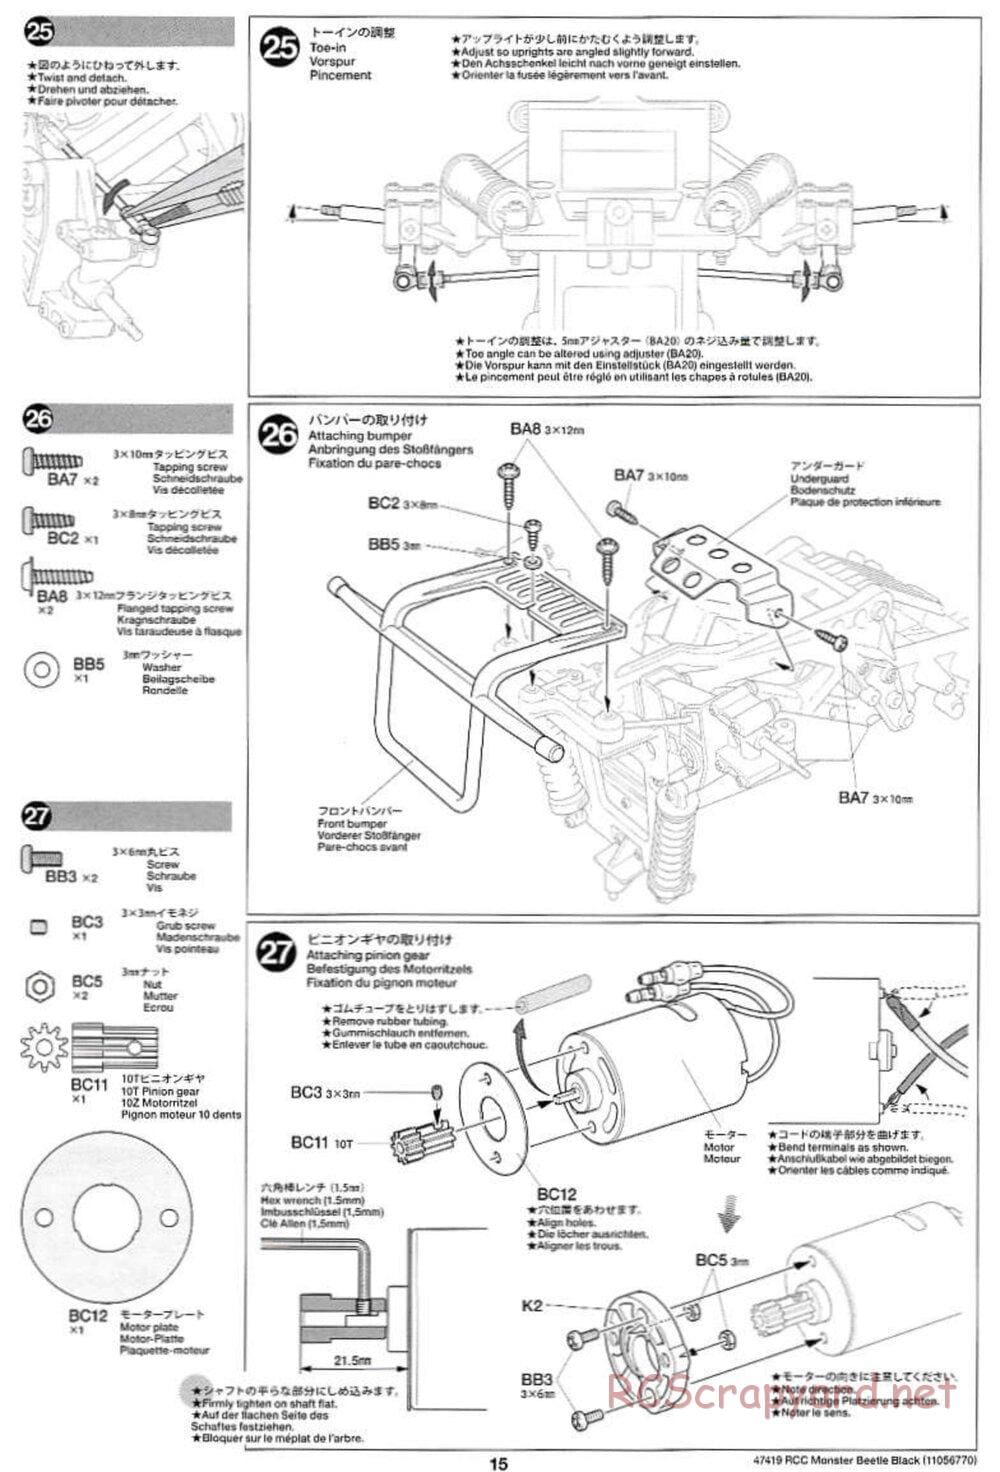 Tamiya - Monster Beetle Black Edition - ORV Chassis - Manual - Page 15